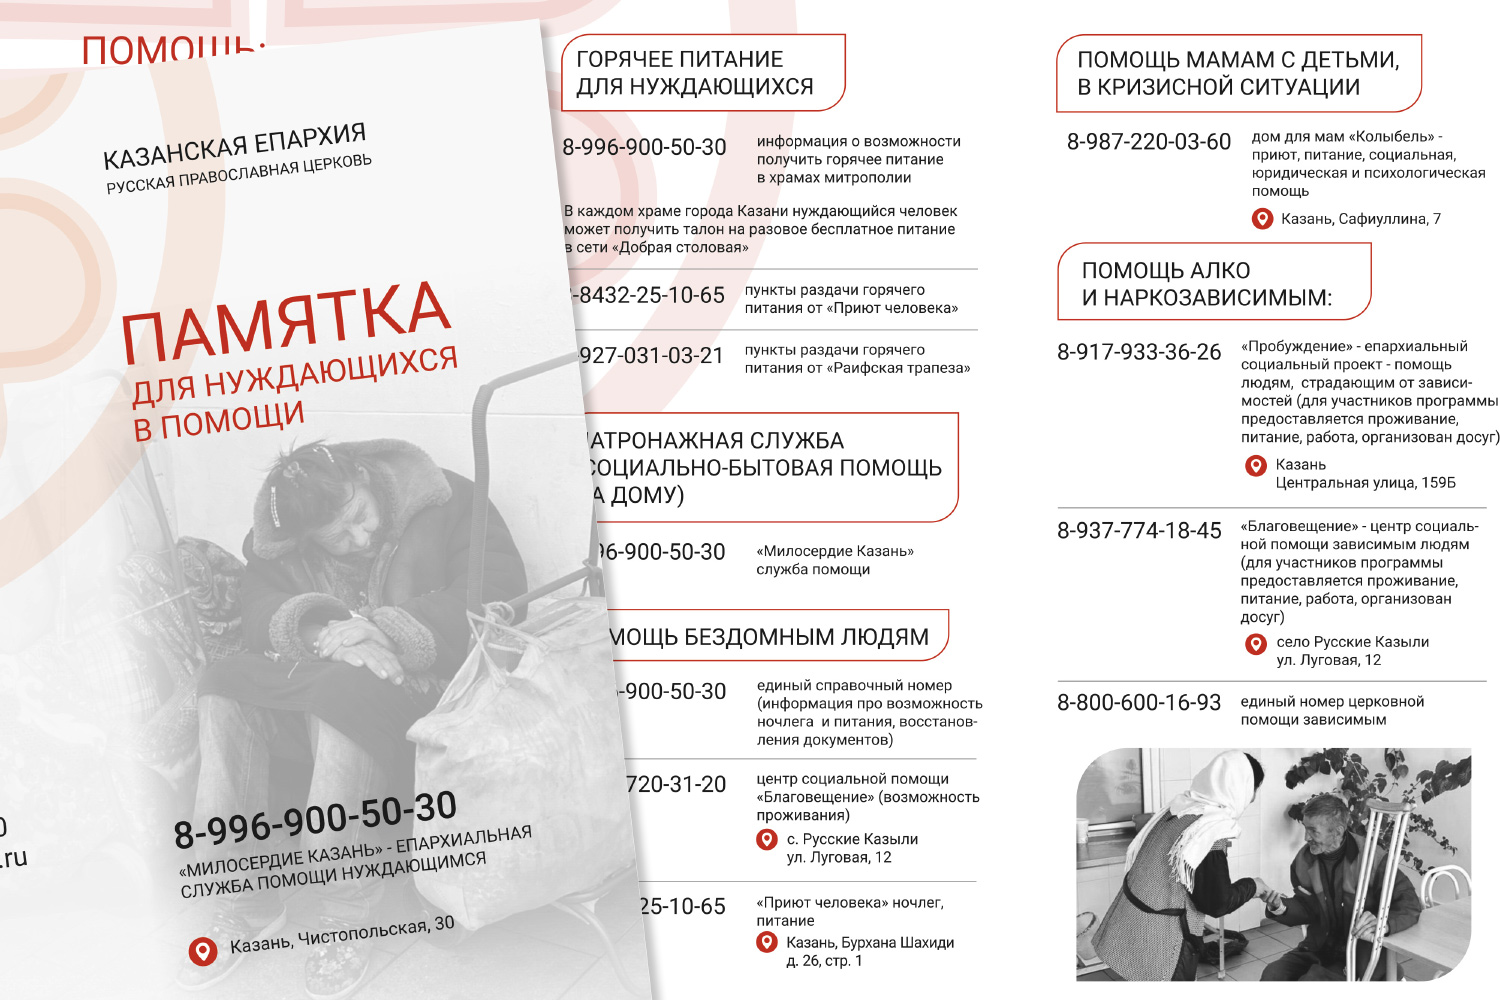 Служба «Милосердие — Казань» выпустила памятку с номерами телефонов служб социальной помощи